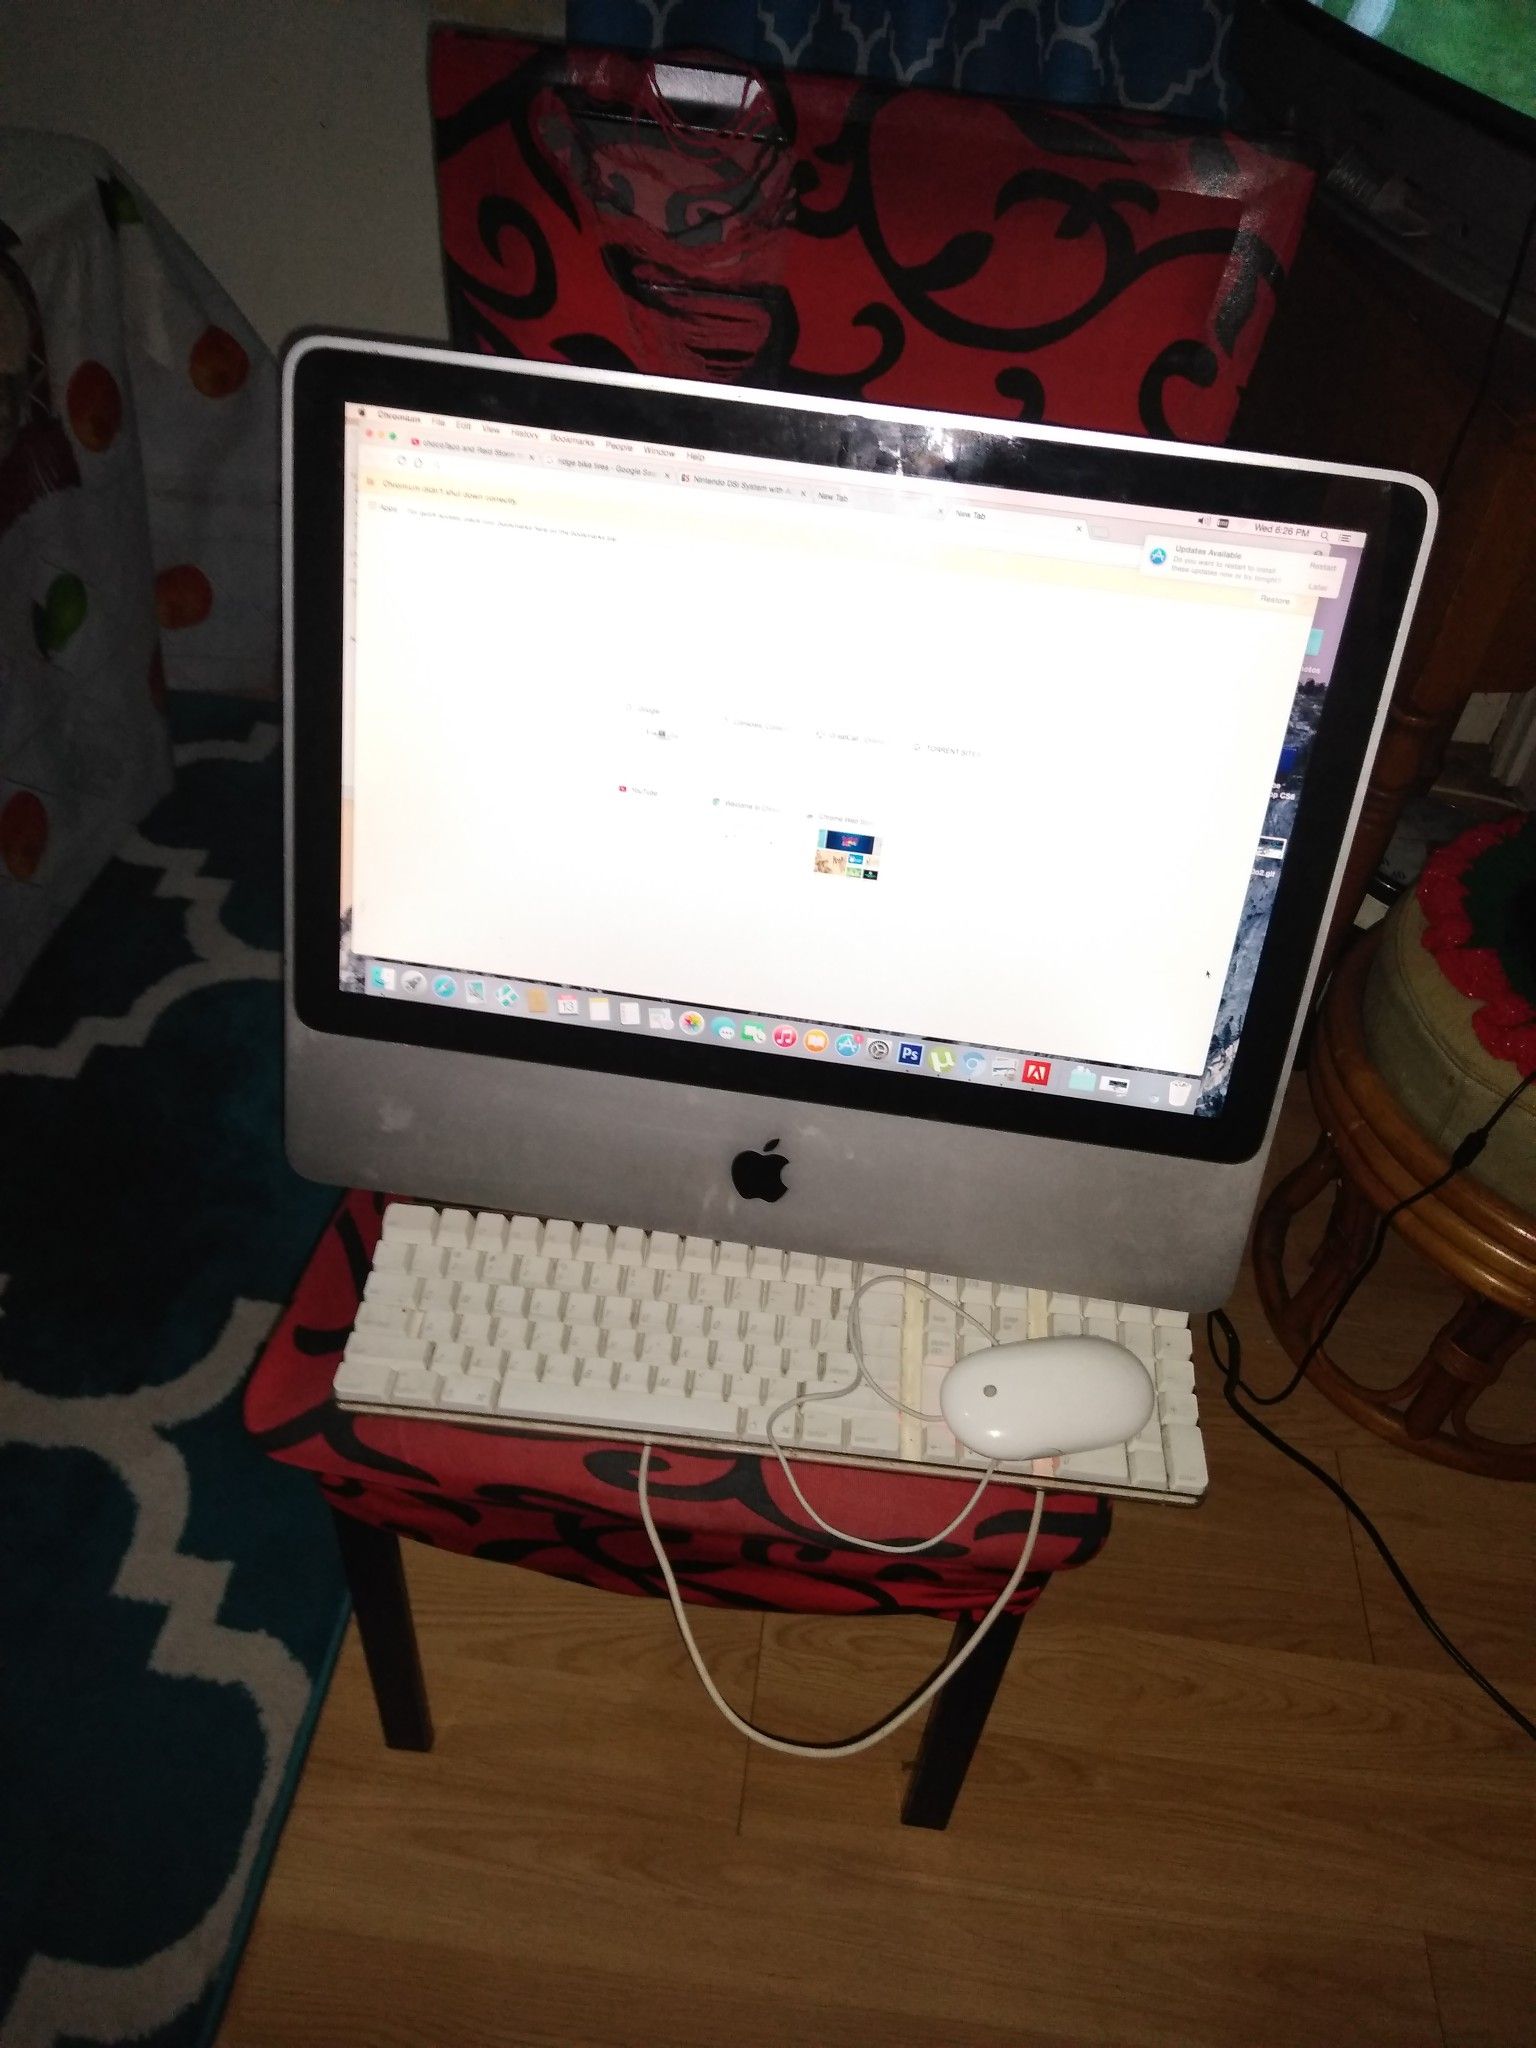 Apple desktop computer with built-in camera